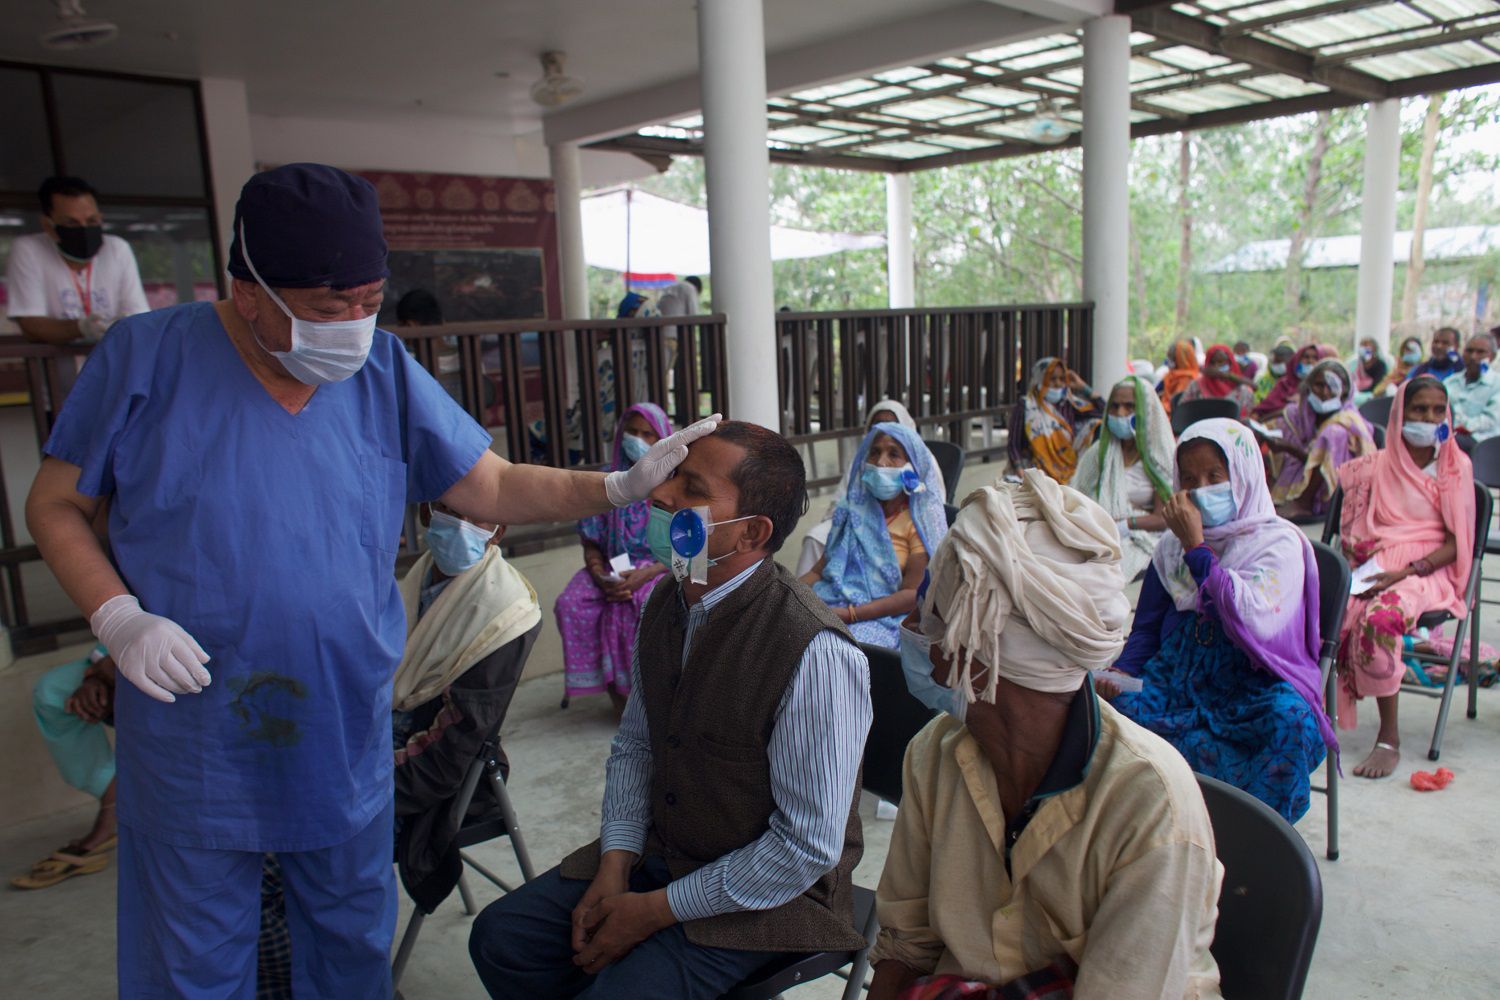 El cirujano Sanduk Ruit observa a un paciente que operó de cataratas mientras decenas más esperan ser atendidos en un hospital improvisado en Lumbini, Nepal, el 31 de mayo del 2021. (AP Photo/Bikram Rai)